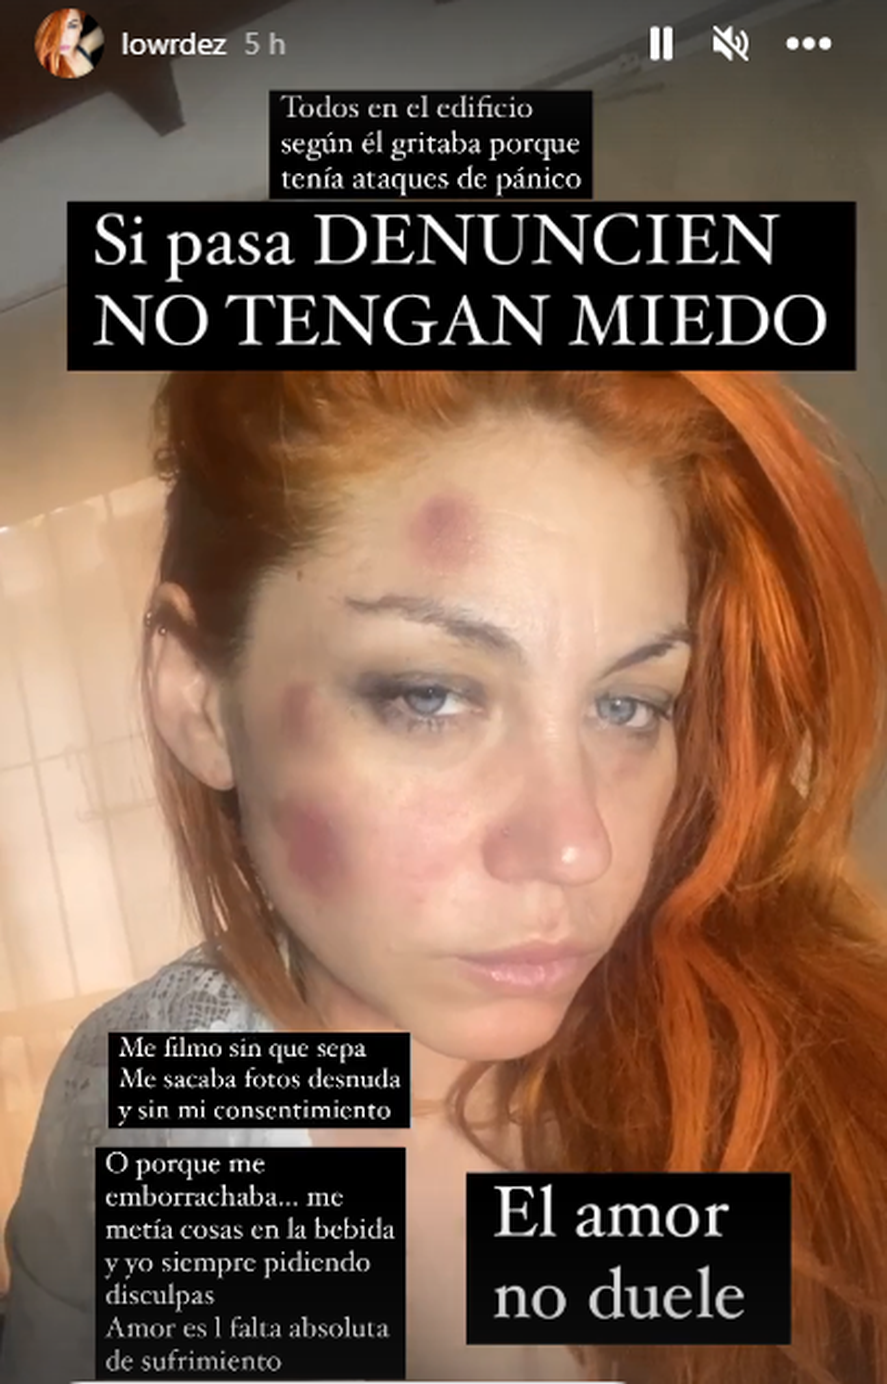 La cantante Lourdes de Bandana denunci&oacute; violencia de g&eacute;nero en sus redes sociales.